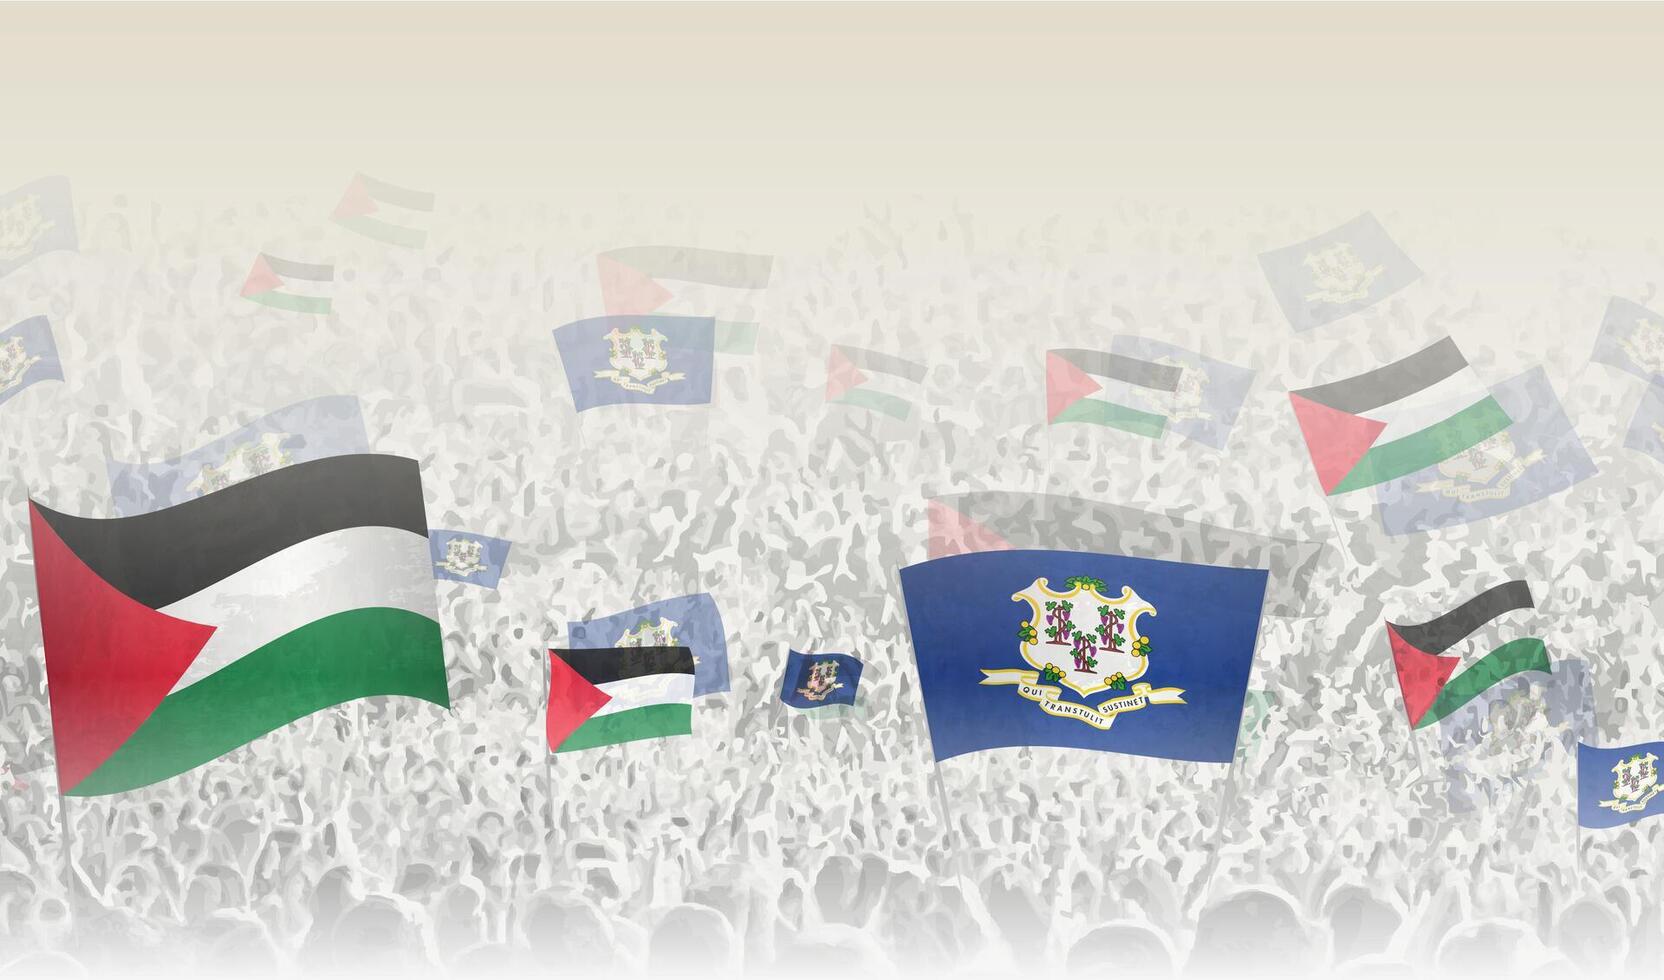 Palästina und Connecticut Flaggen im ein Menge von Jubel Personen. vektor